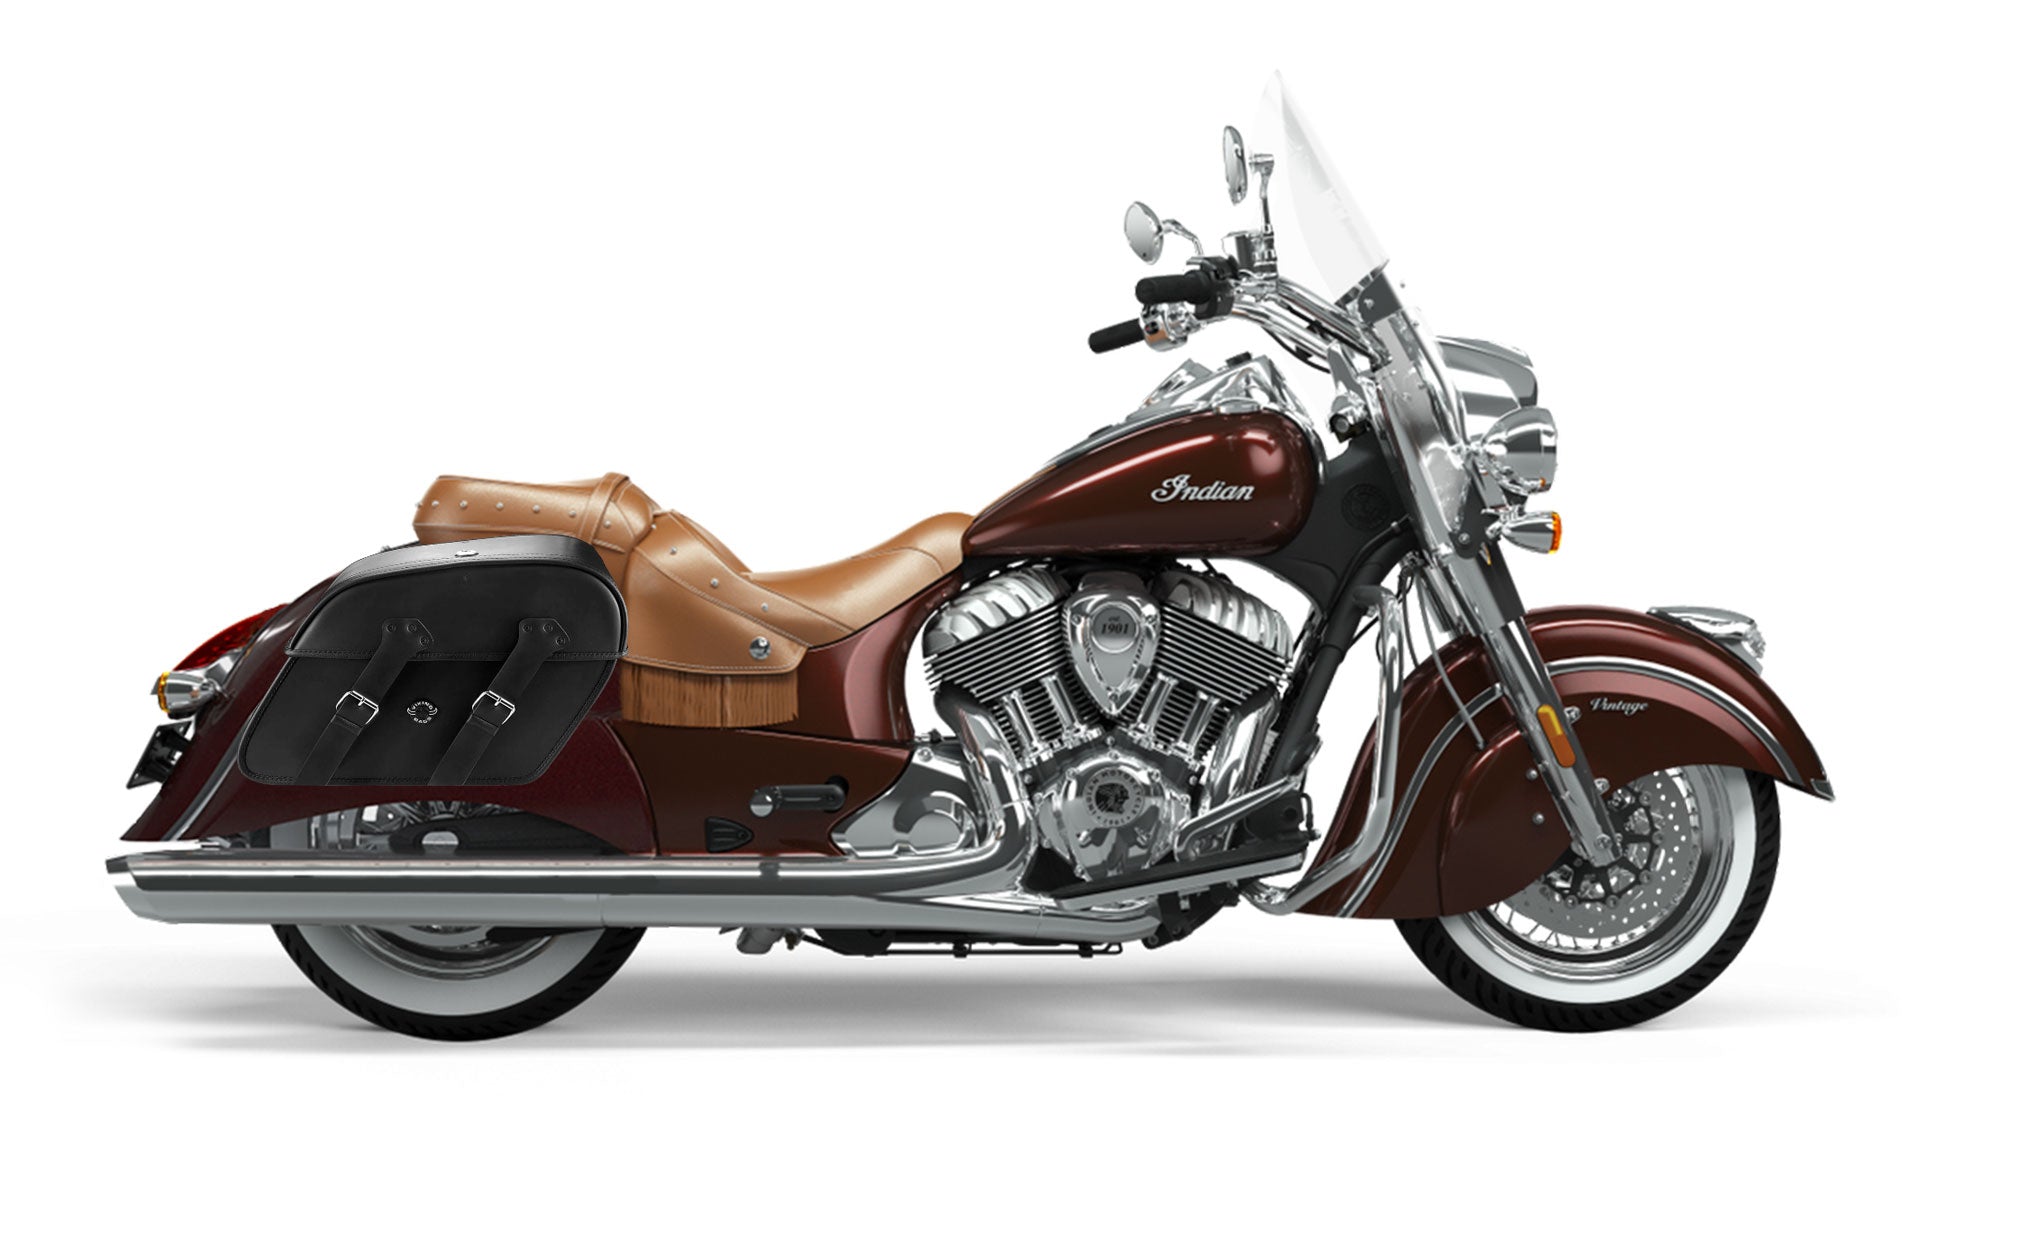 Viking Raven Extra Large Indian Vintage Leather Motorcycle Saddlebags on Bike Photo @expand